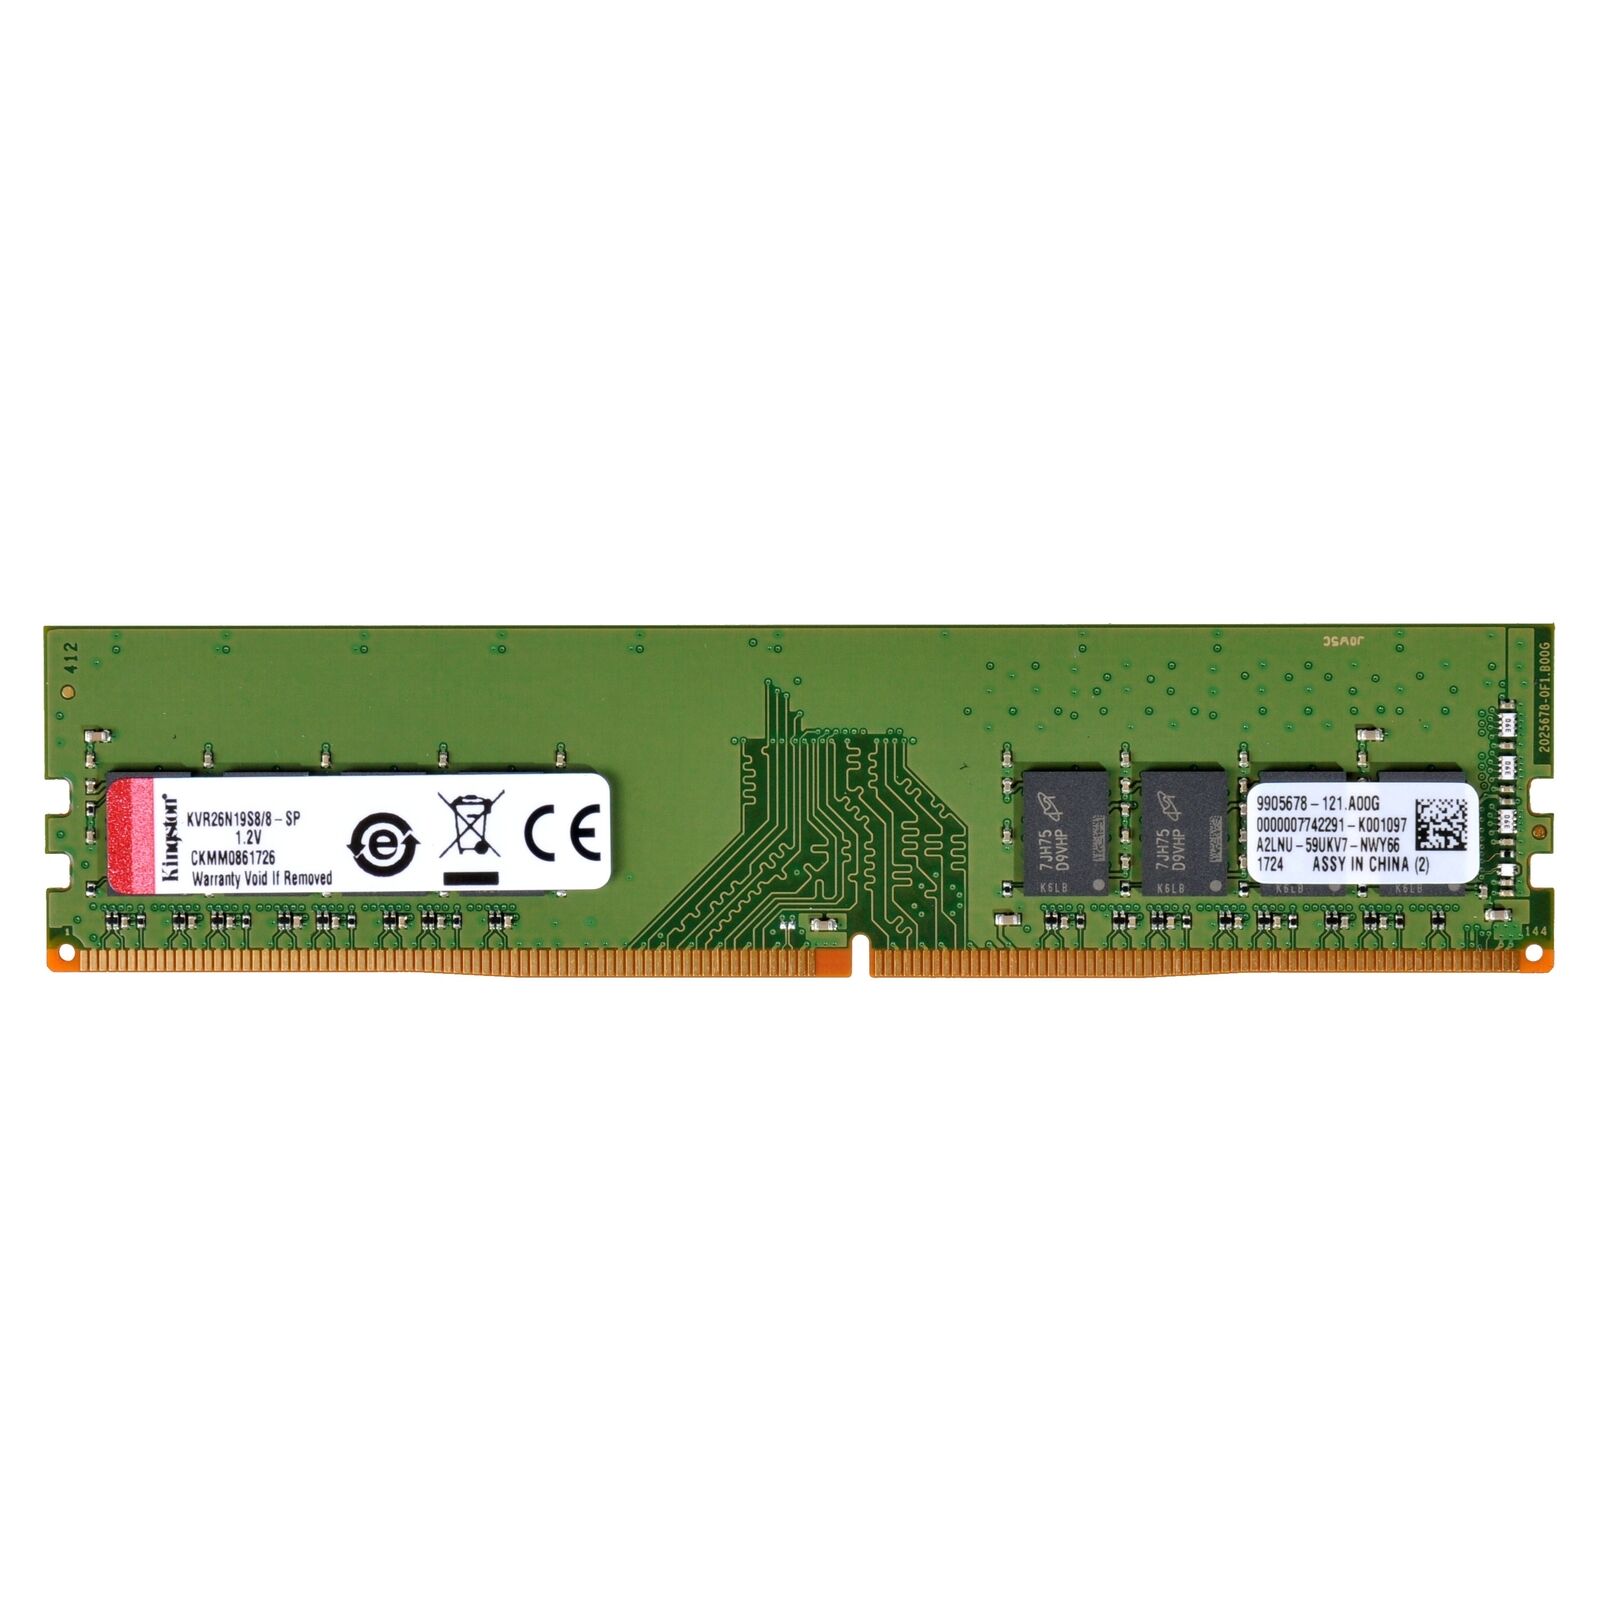 Kingston ValueRAM 8GB DDR4 SDRAM Memory Module (kvr26n19s8-8) (kvr26n19s8/8)